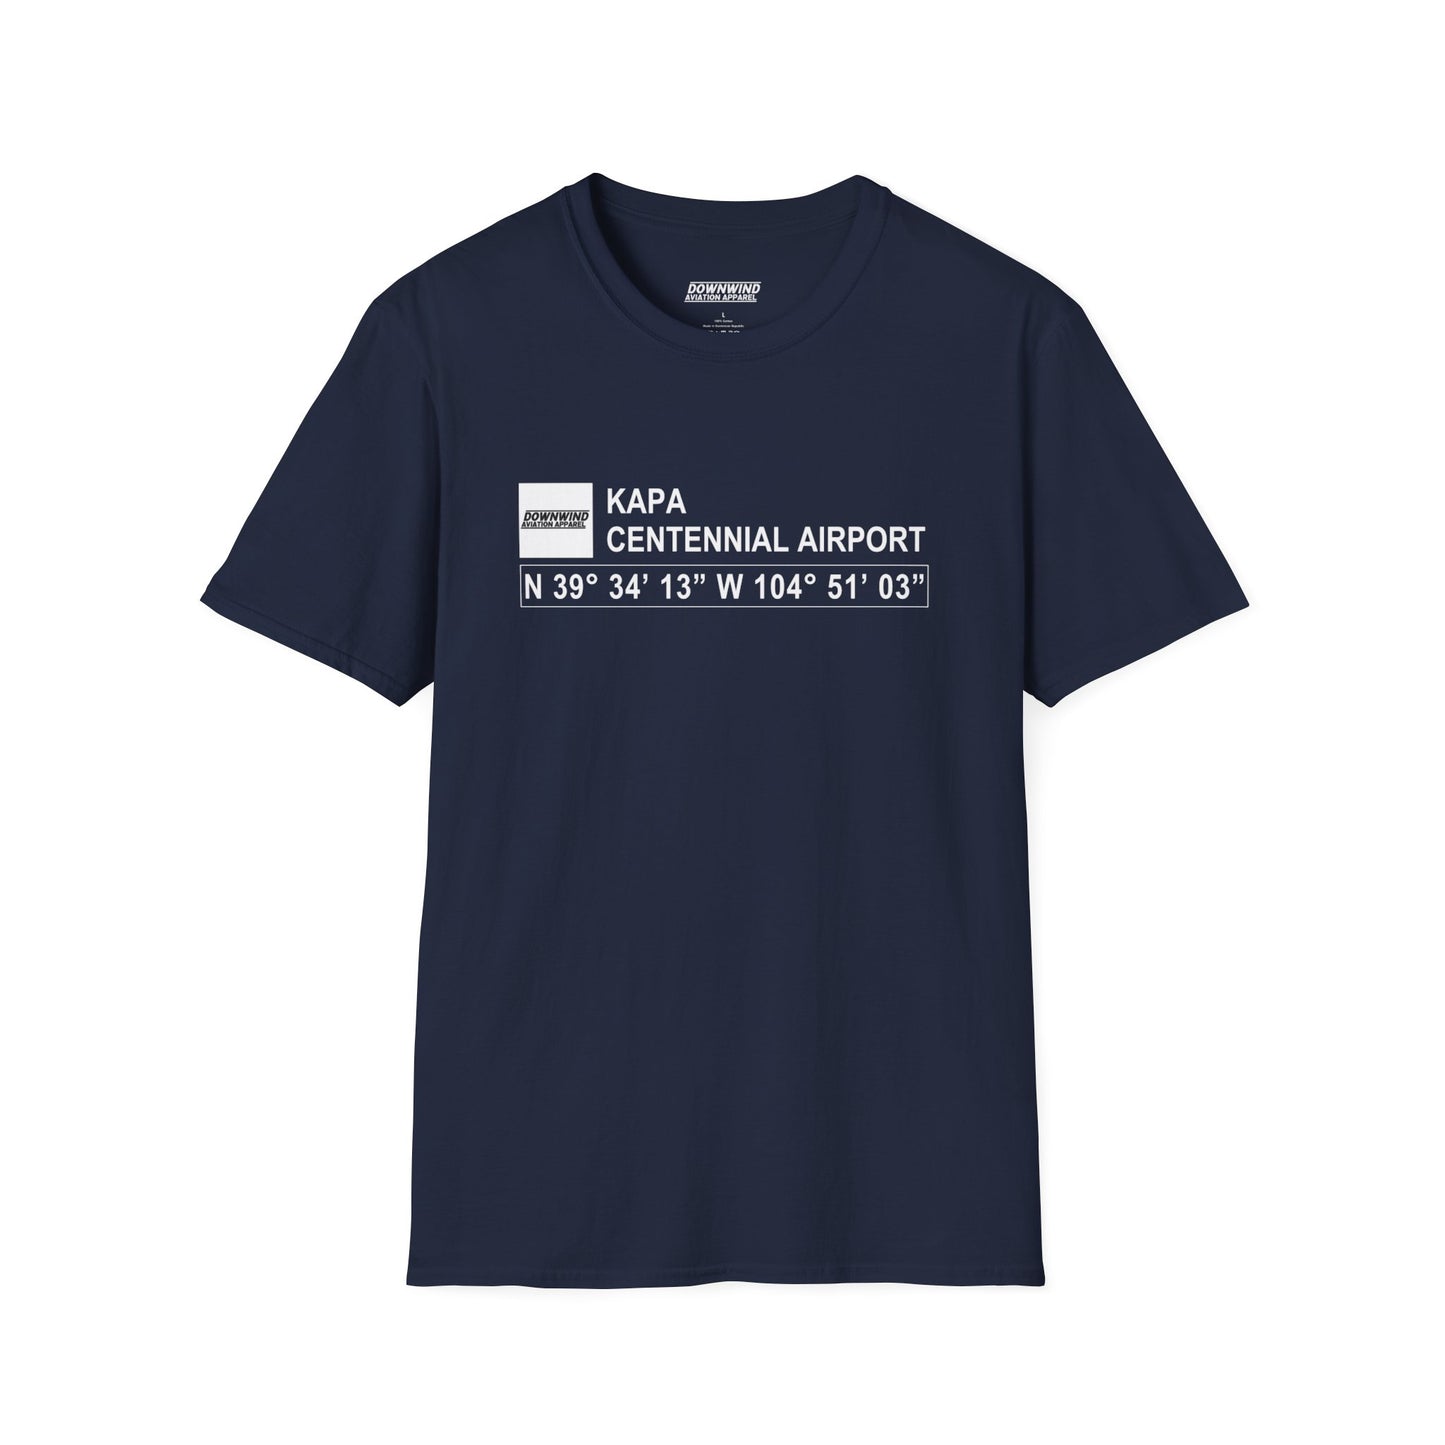 KAPA / Centennial Airport T-Shirt